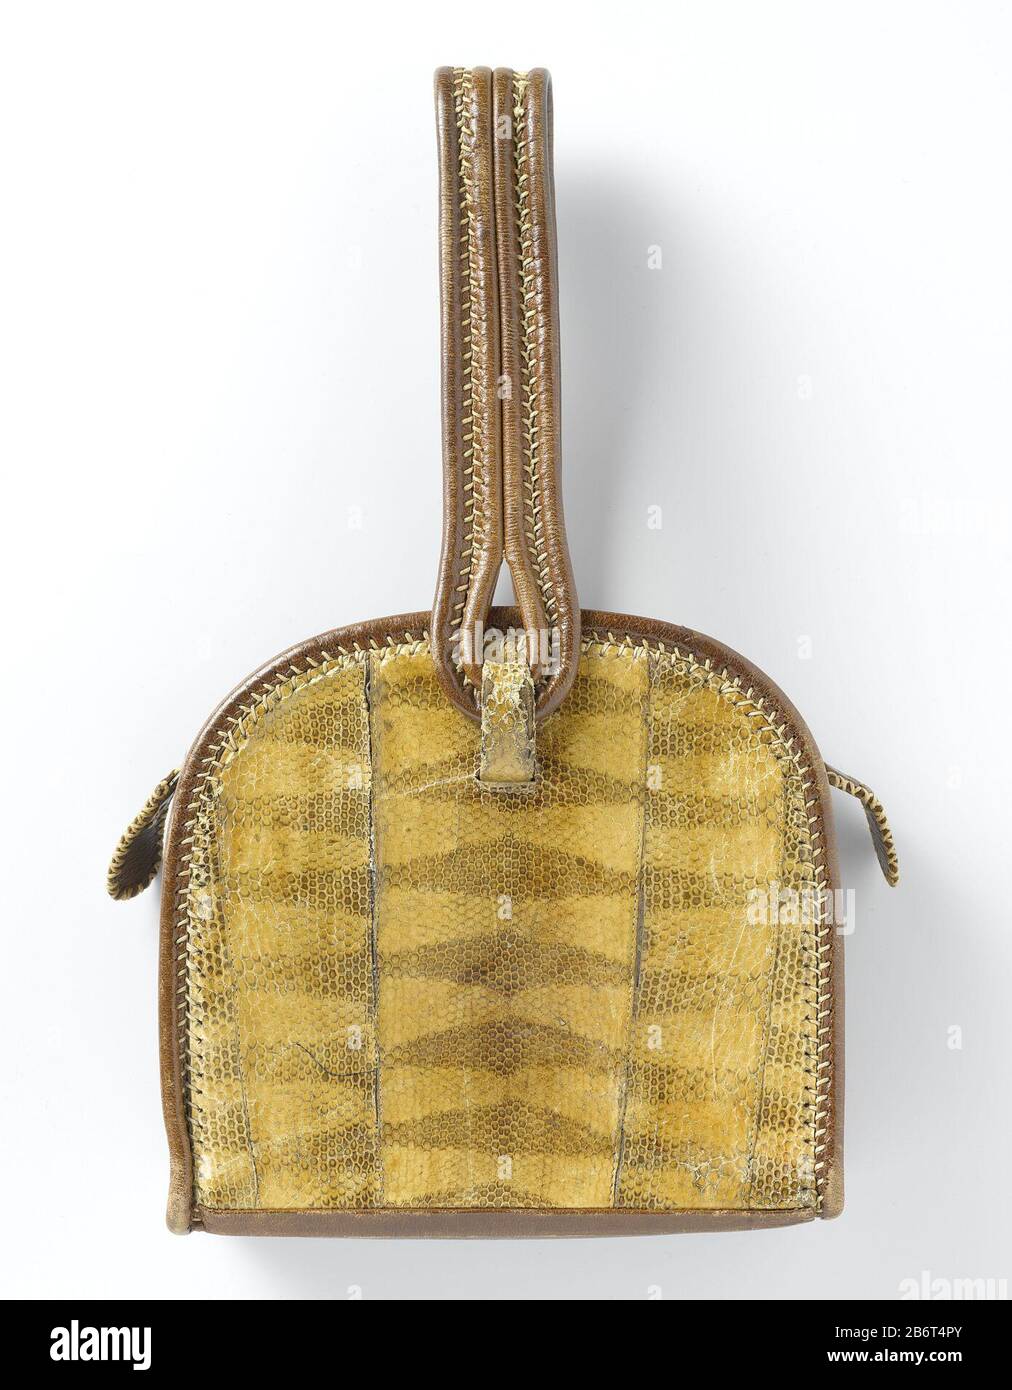 Knorretje Langskomen gips Handtas in een halfrond model, van bruin tuigleer, gegarneerd met  slangenleer Handtas in een half rond model, van bruin tuigleer, met aan de  voor en achterkant bekleed met slangenleer. Langs de hele